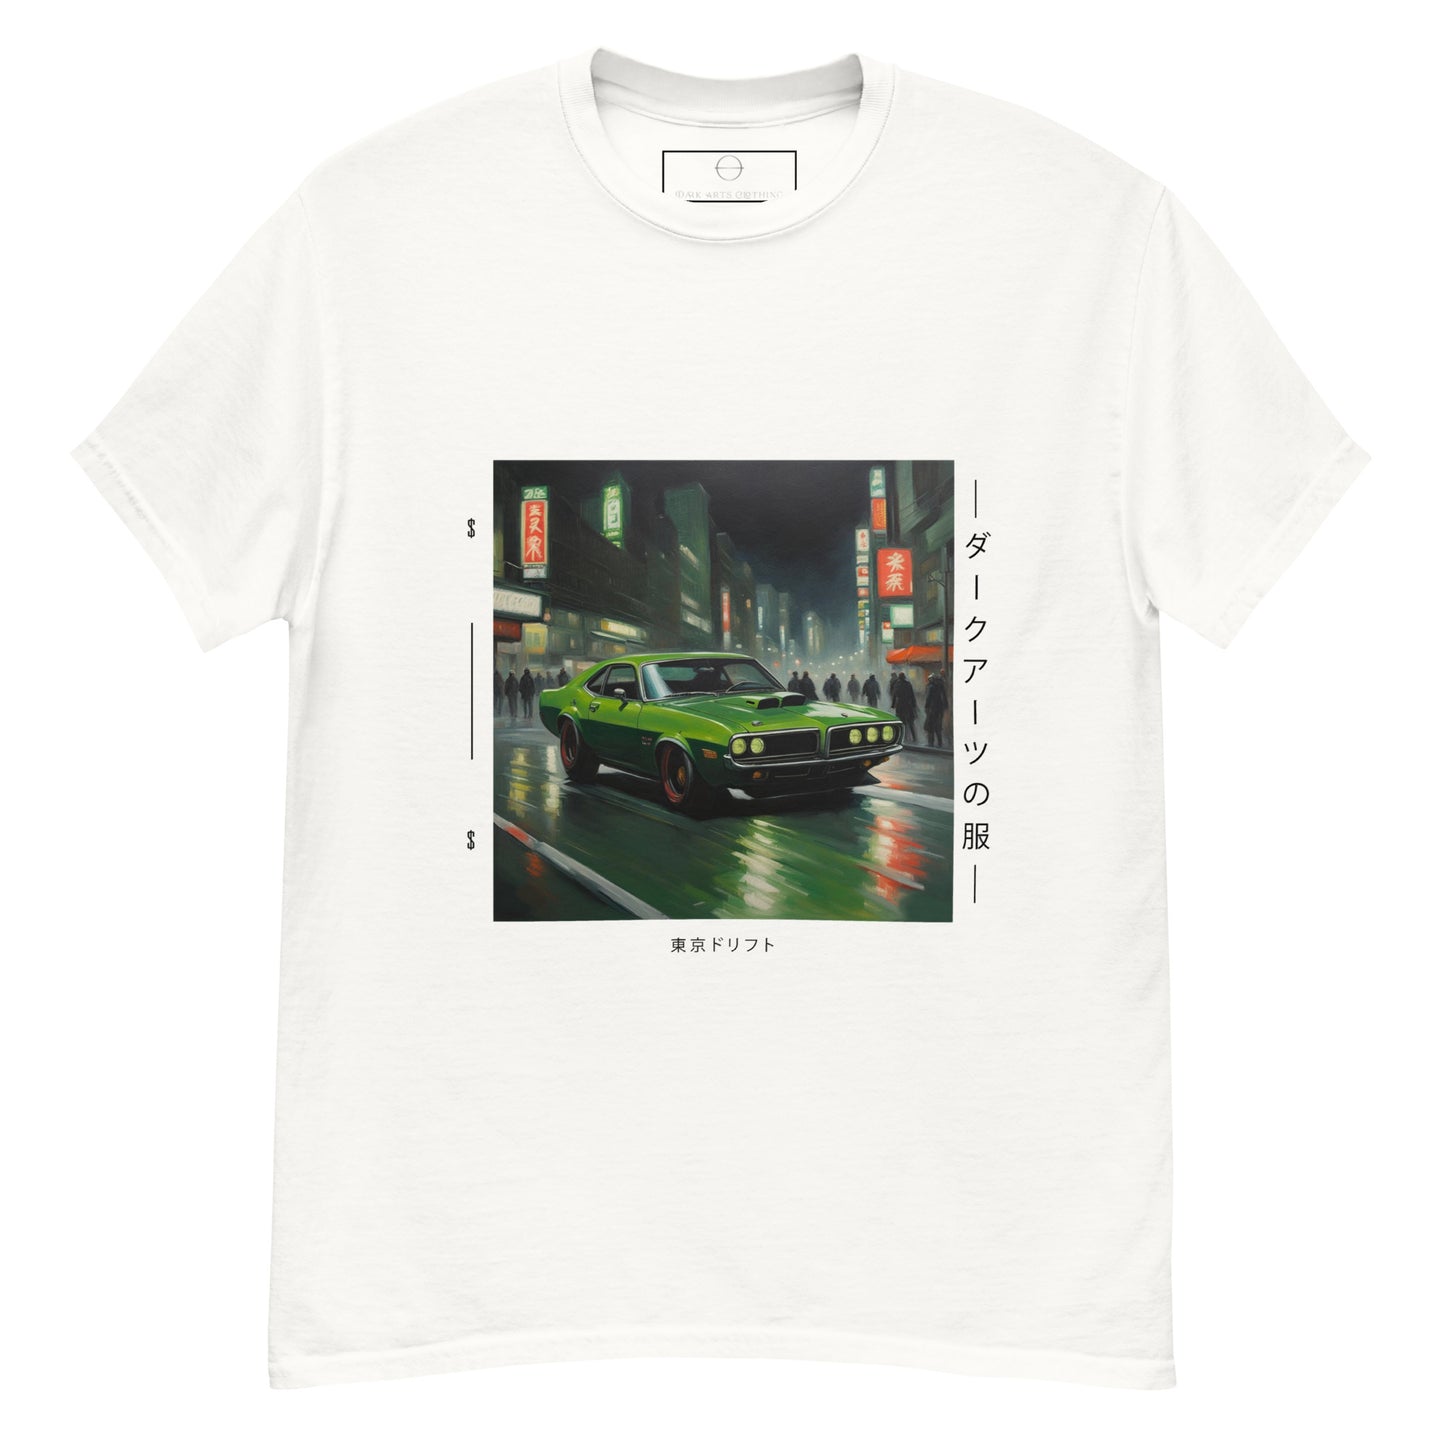 Tokyo Drift I - T Shirt